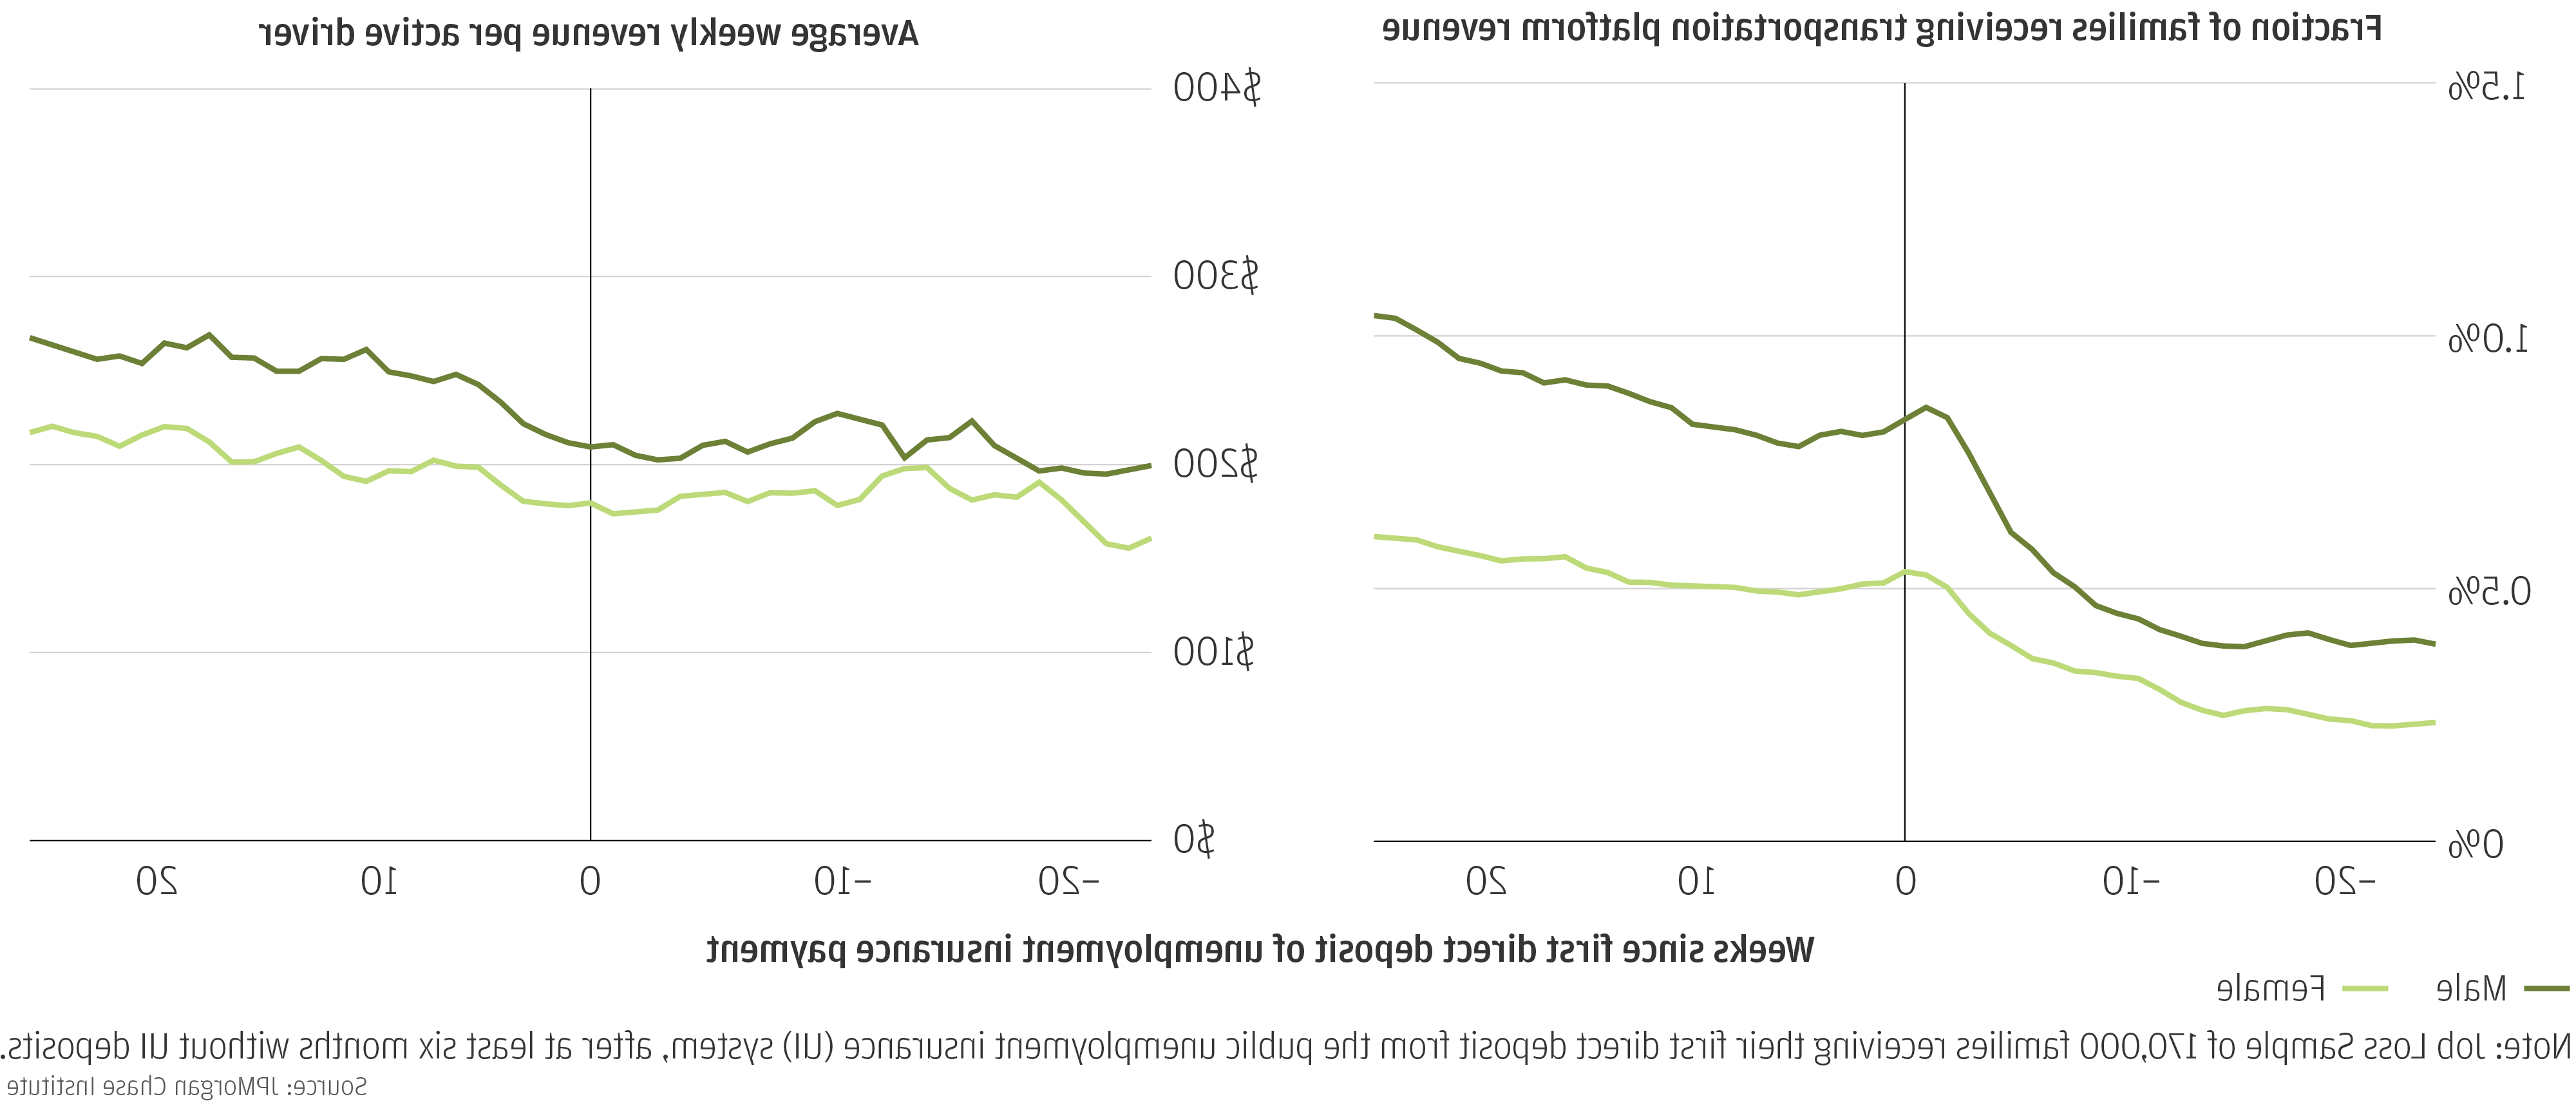 折线图描述了男性账户持有人在失业时，交通平台参与度和平均每周收入的增长速度比女性账户持有人更快